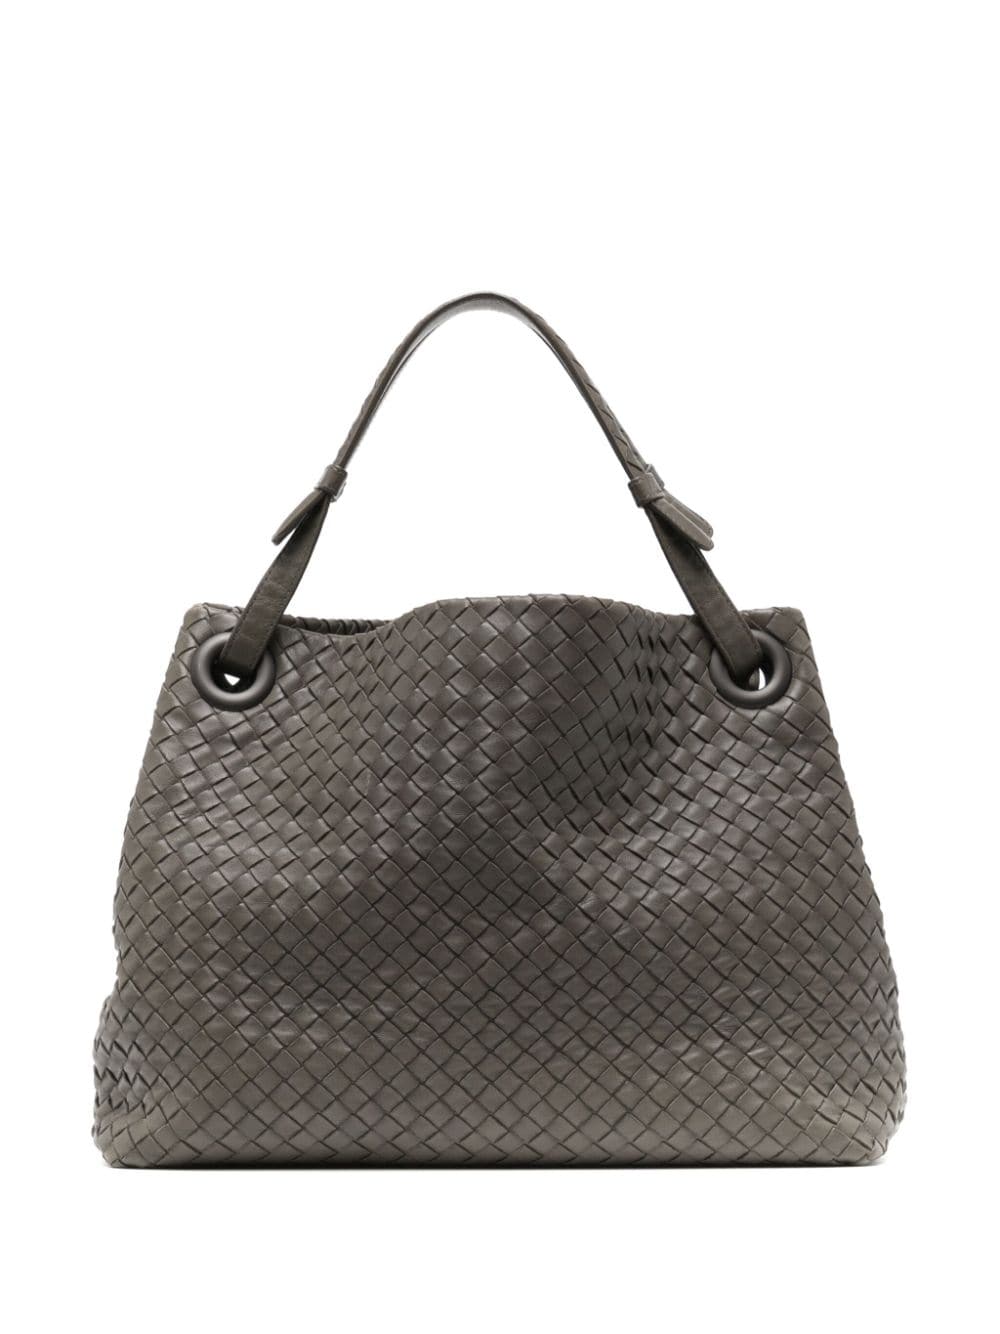 Pre-owned Bottega Veneta Intrecciato Leather Tote Bag In Grey